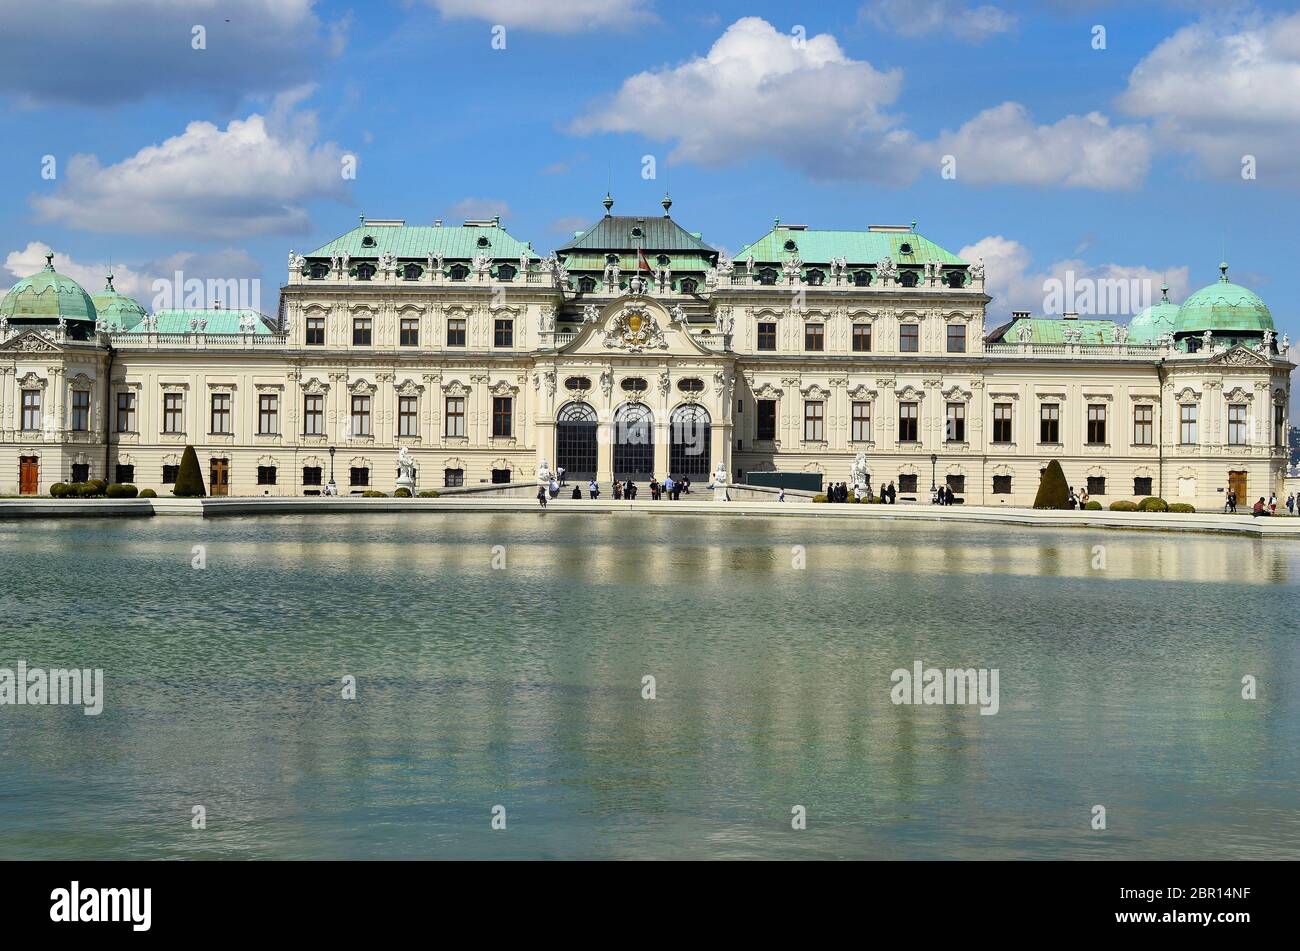 Wien, Österreich - 21. April 2012: Unbekannte Personen im Schloss Belvedere, einem bevorzugten Reiseziel und einem interessanten Ort Stockfoto